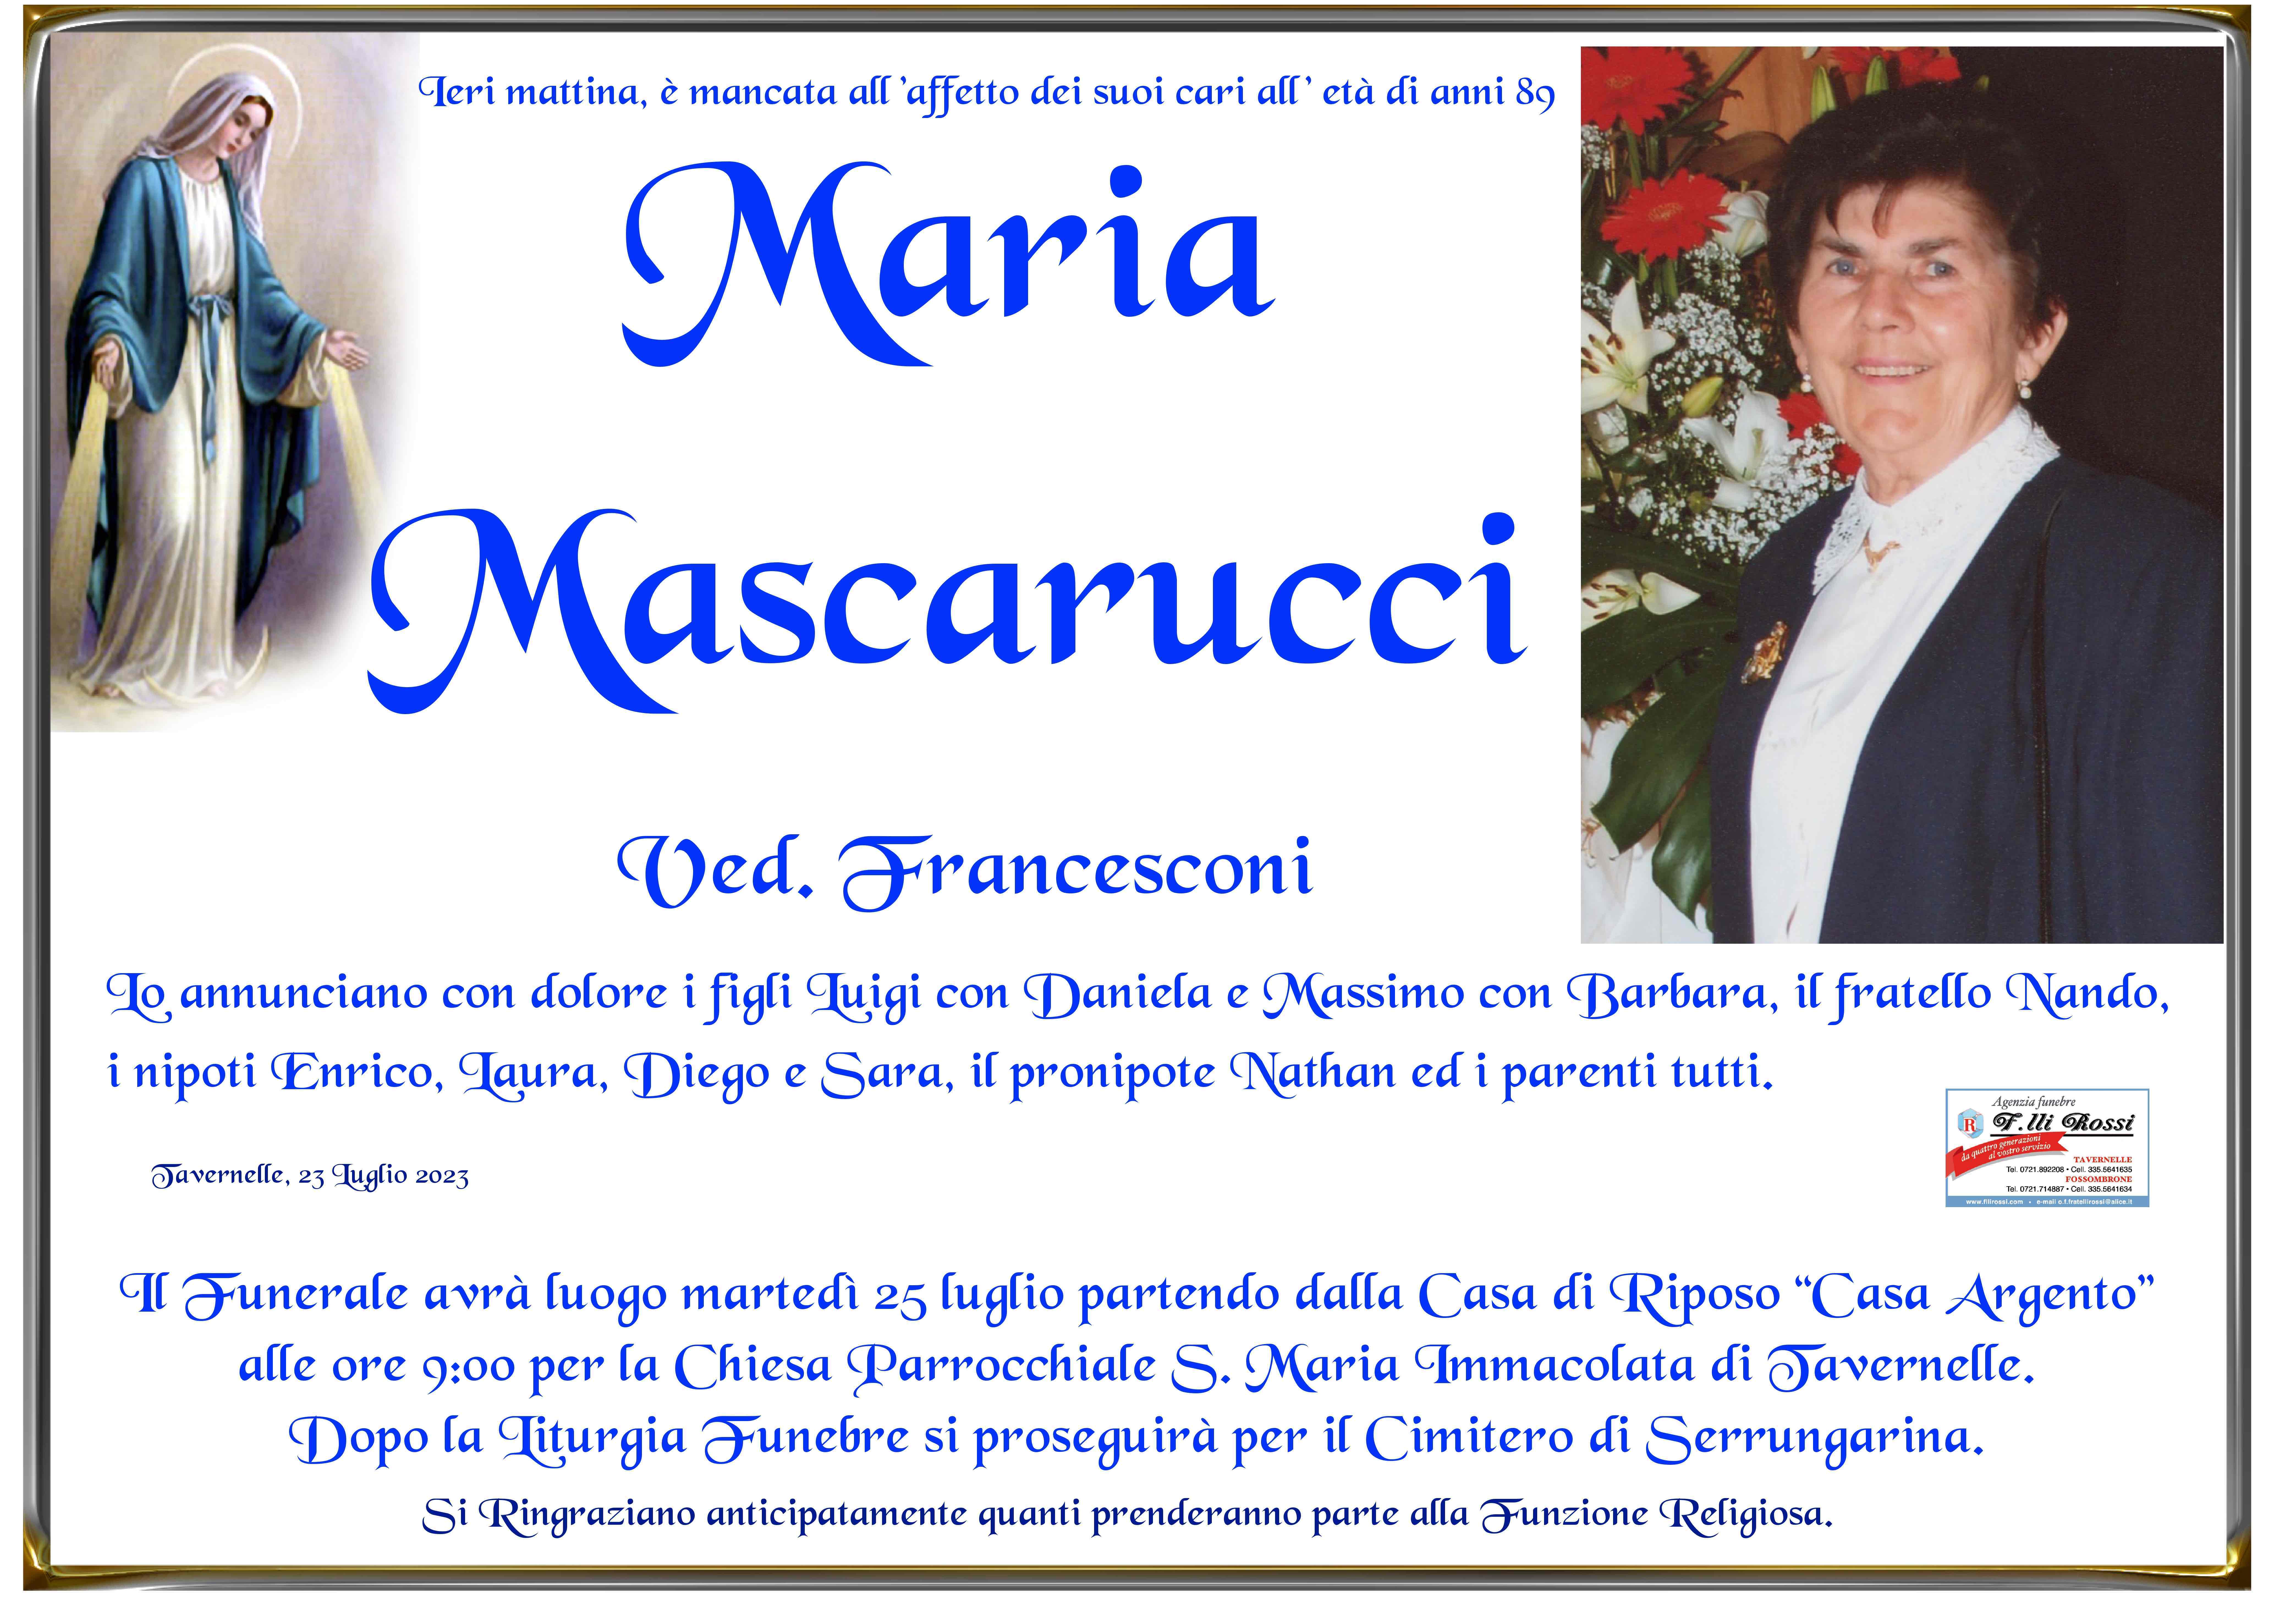 Maria Mascarucci